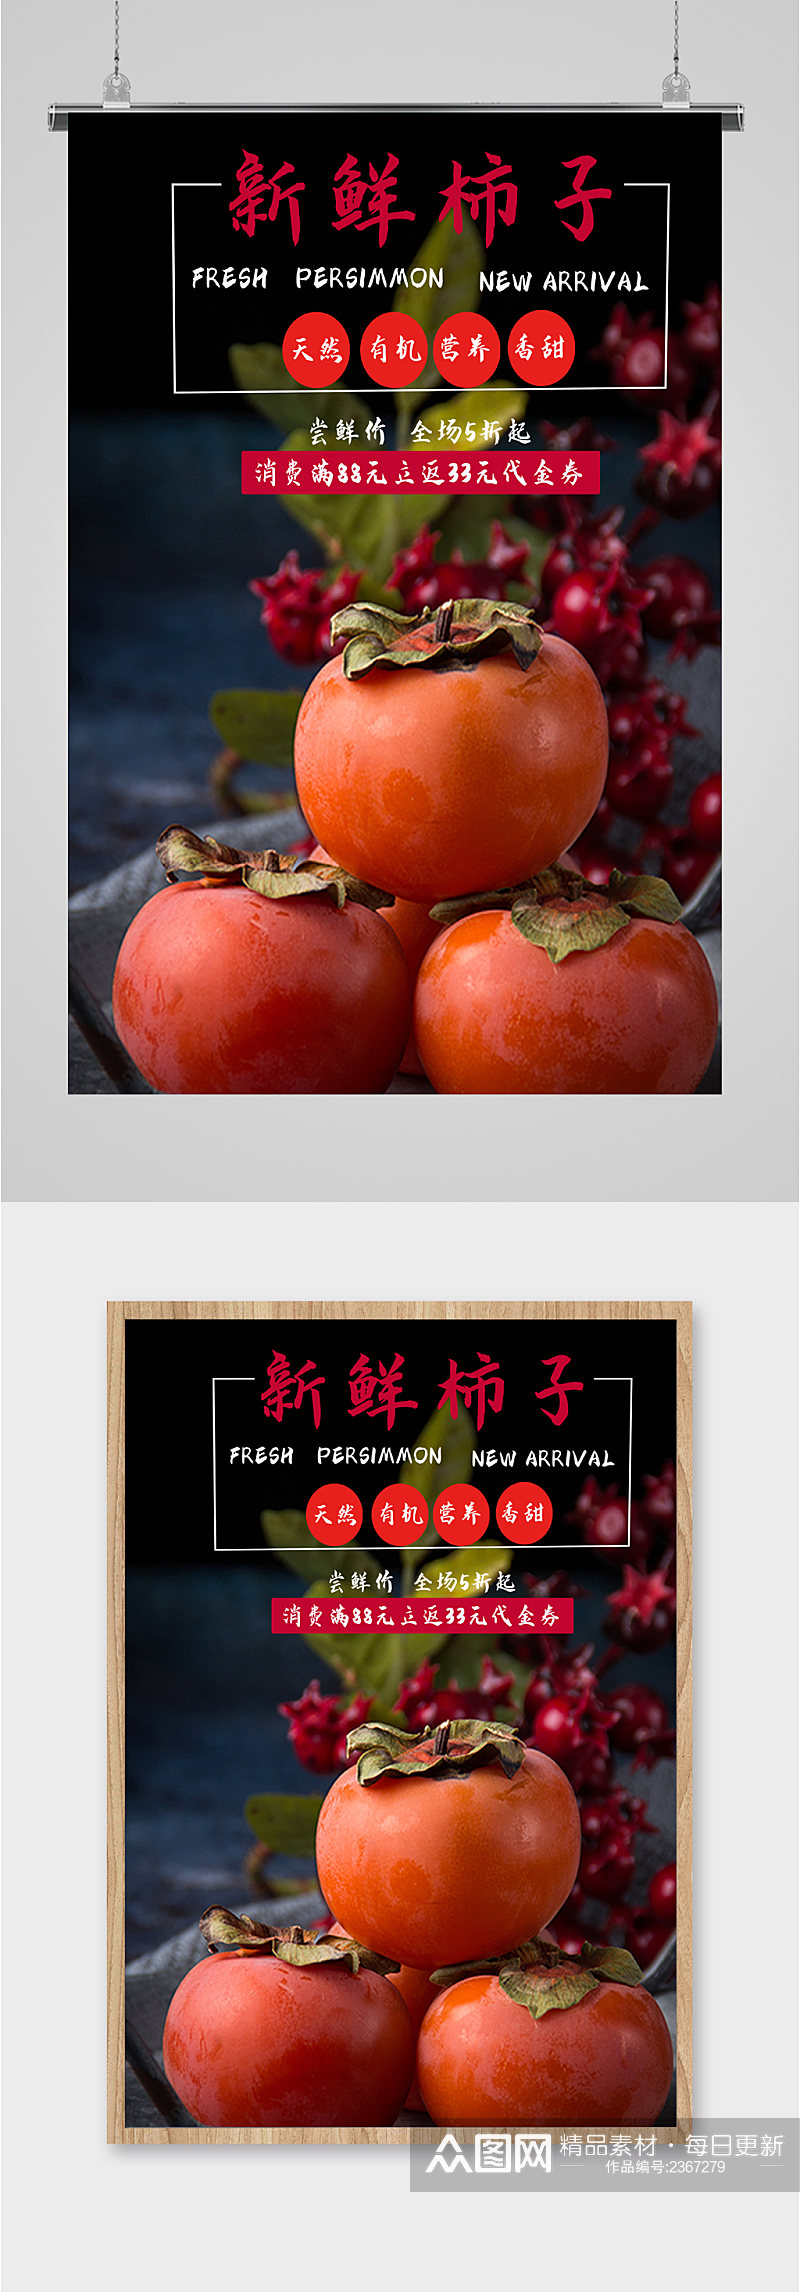 新鲜柿子水果海报素材